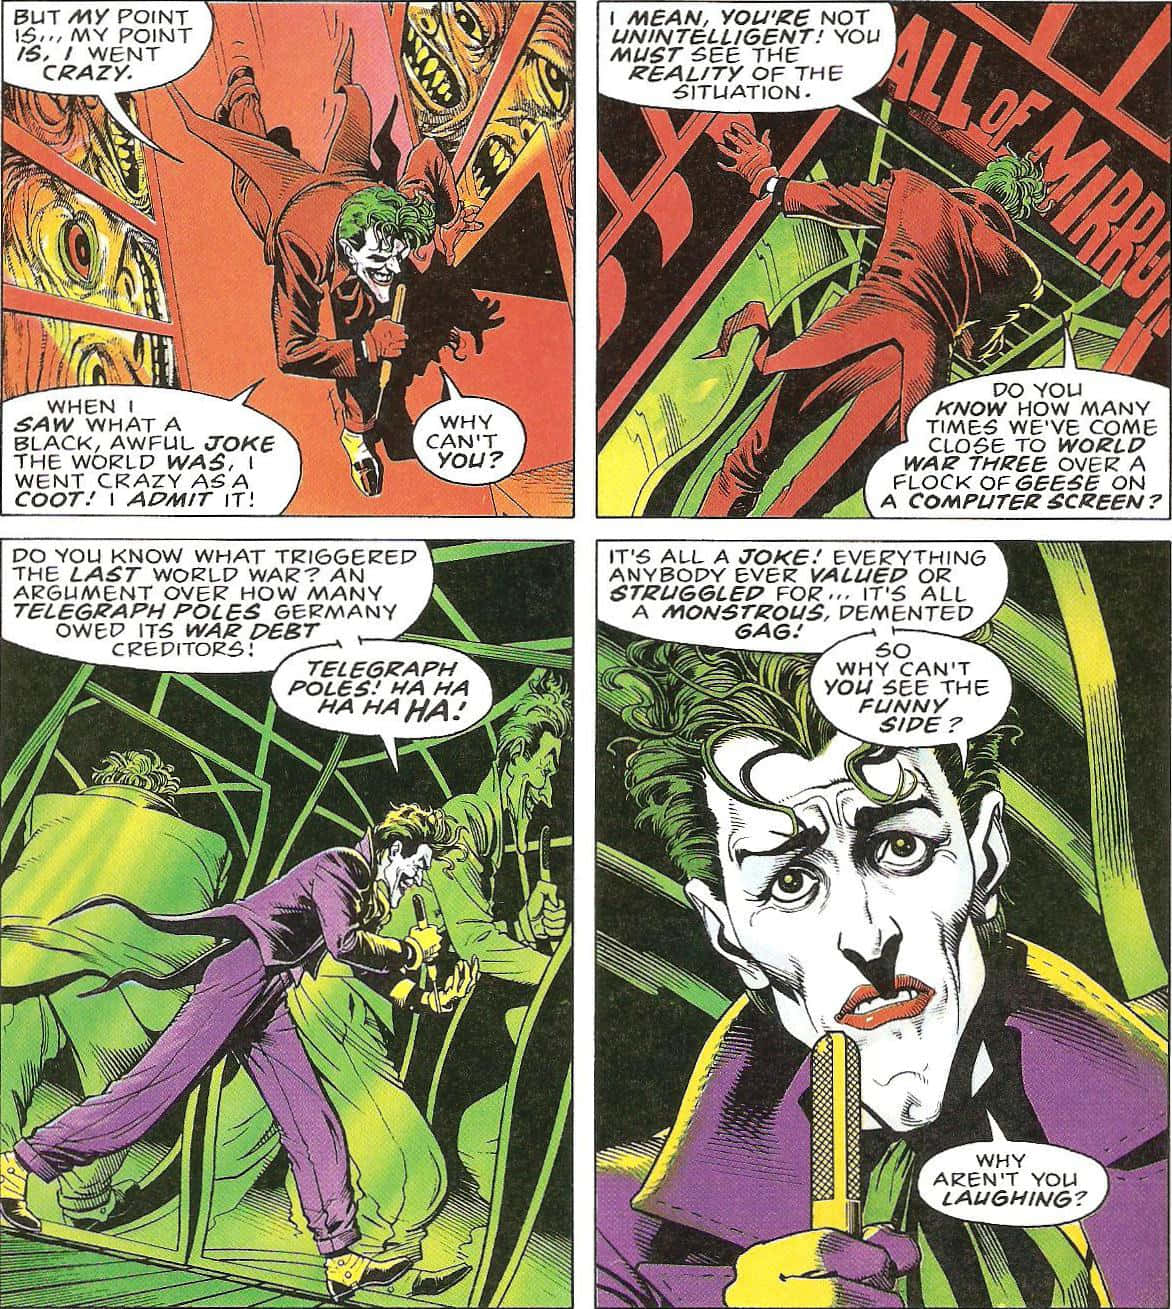 Batman and Joker face-off in The Killing Joke Wallpaper